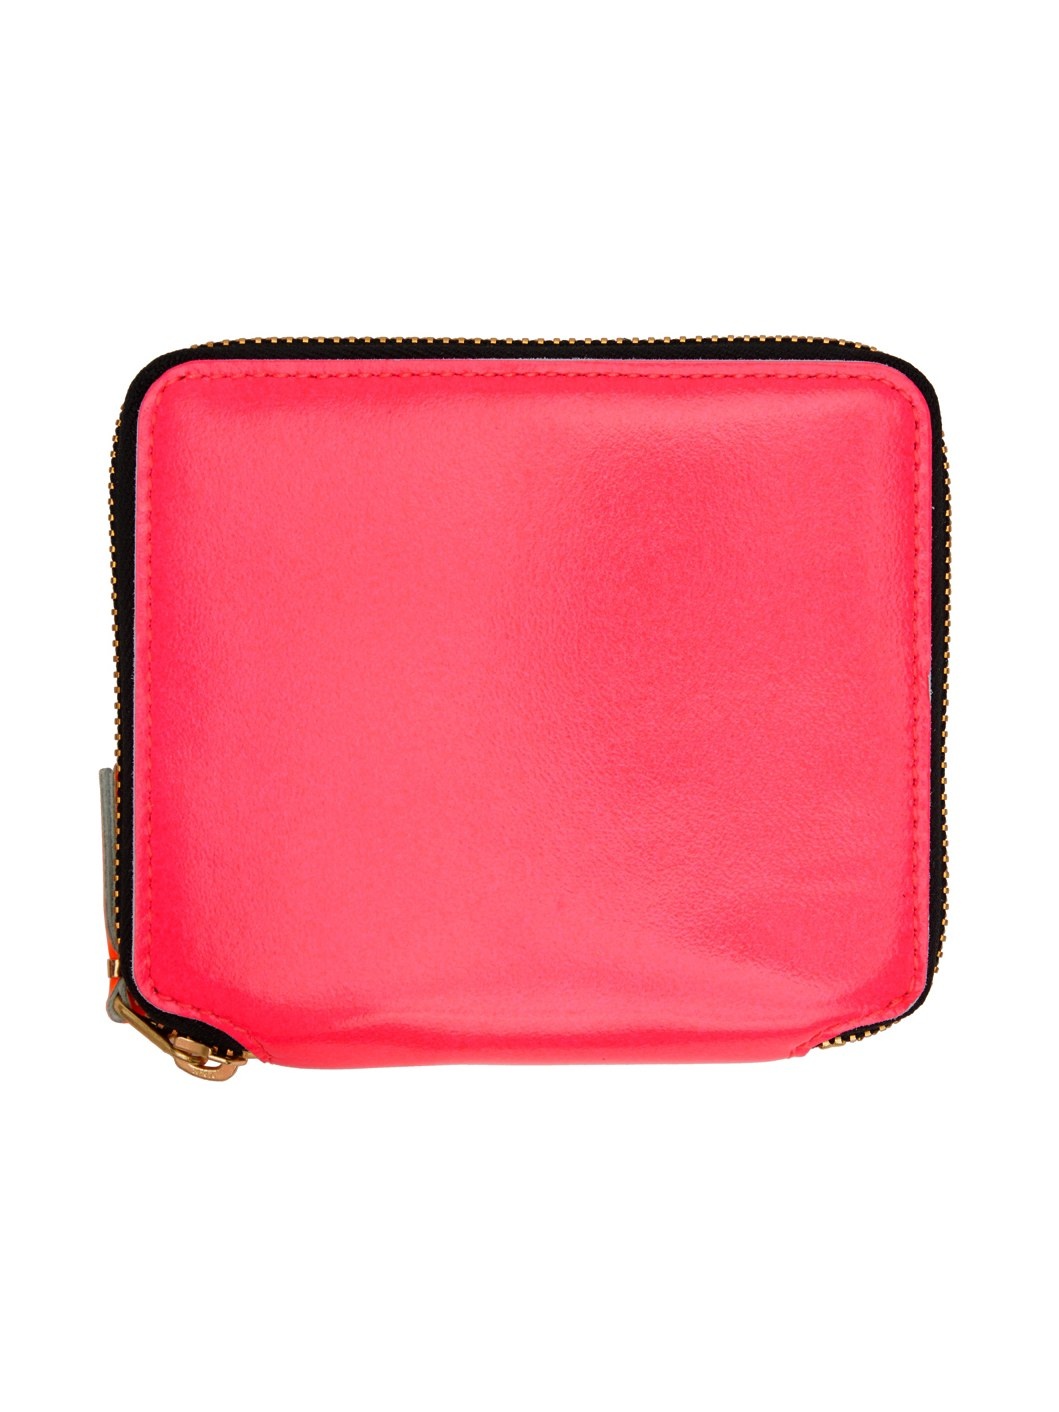 Pink Super Fluo Zip Wallet - 1